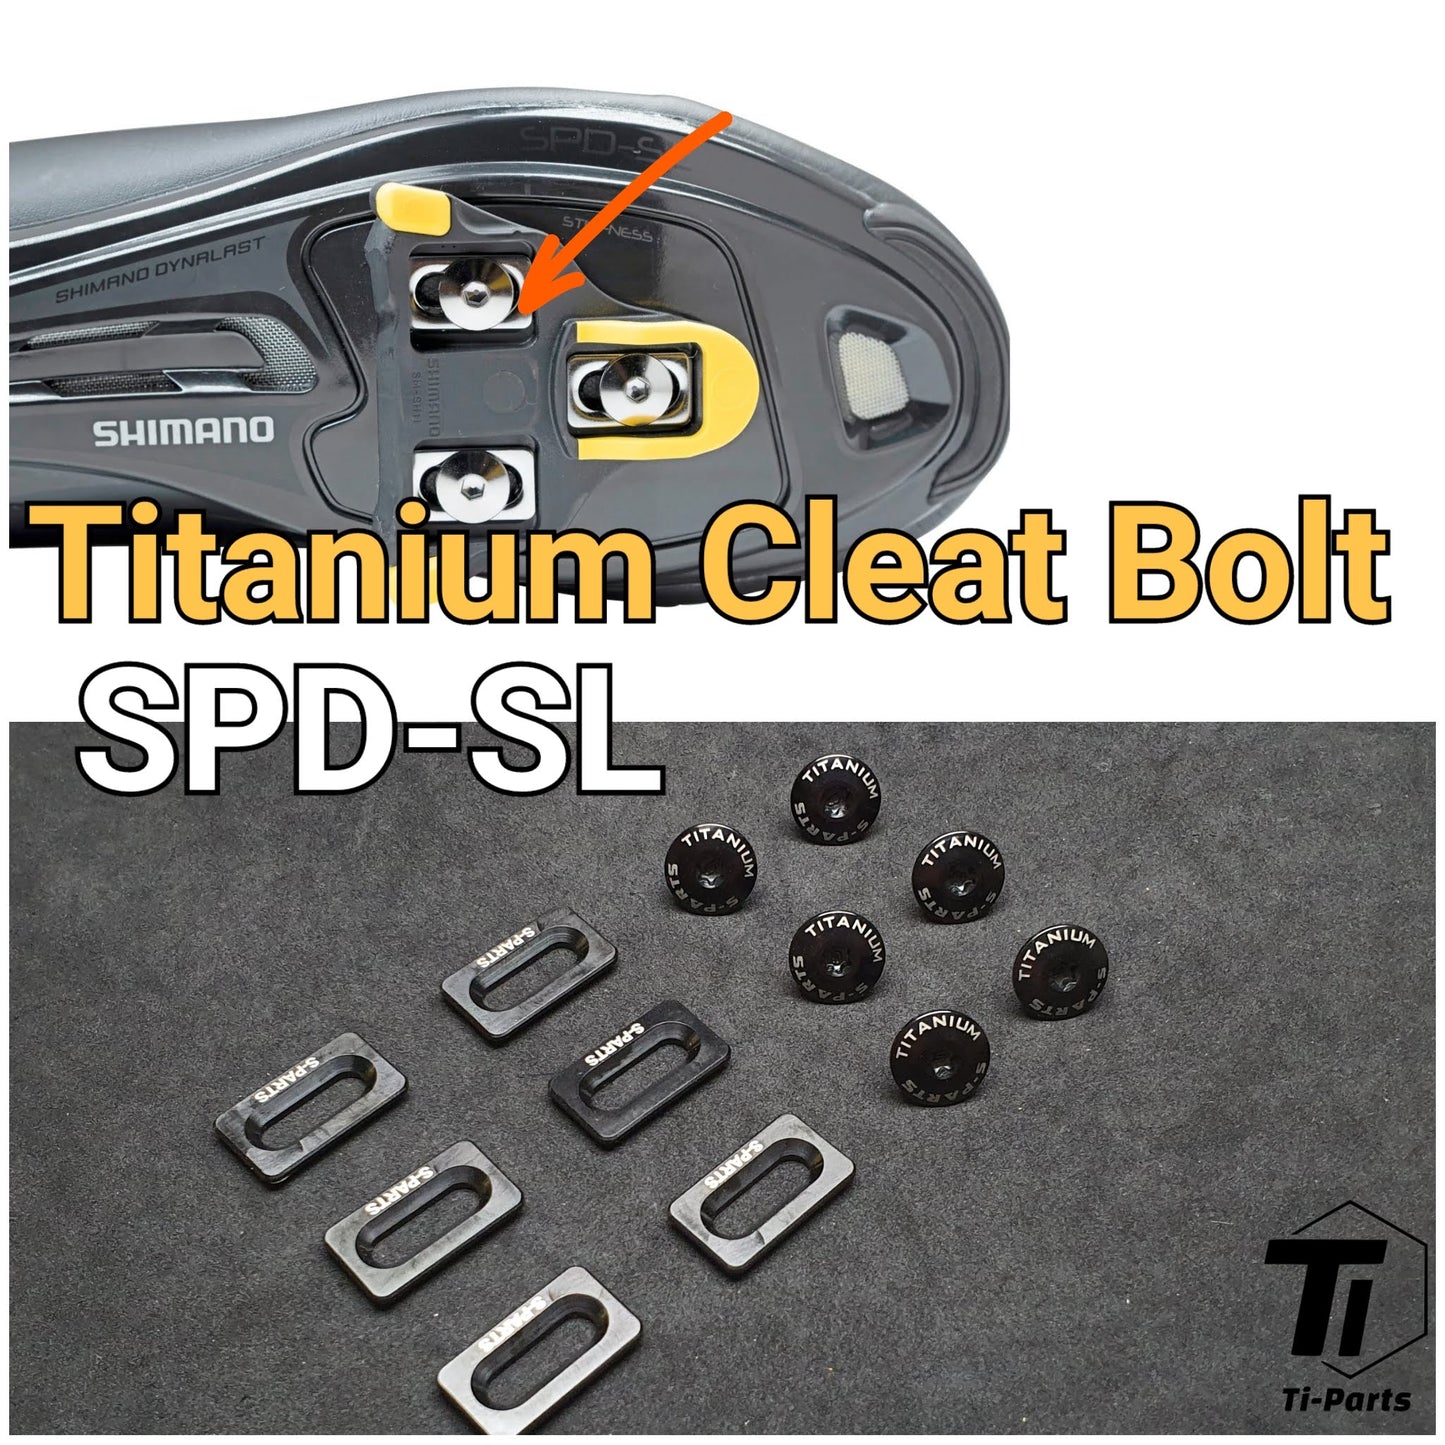 Titaniumschraube für Shimano Cleat SPD-SL | SM-SH11 SH11 Y42U98010 Schuhklampe | Titaniumschraube Grade 5 Singapur